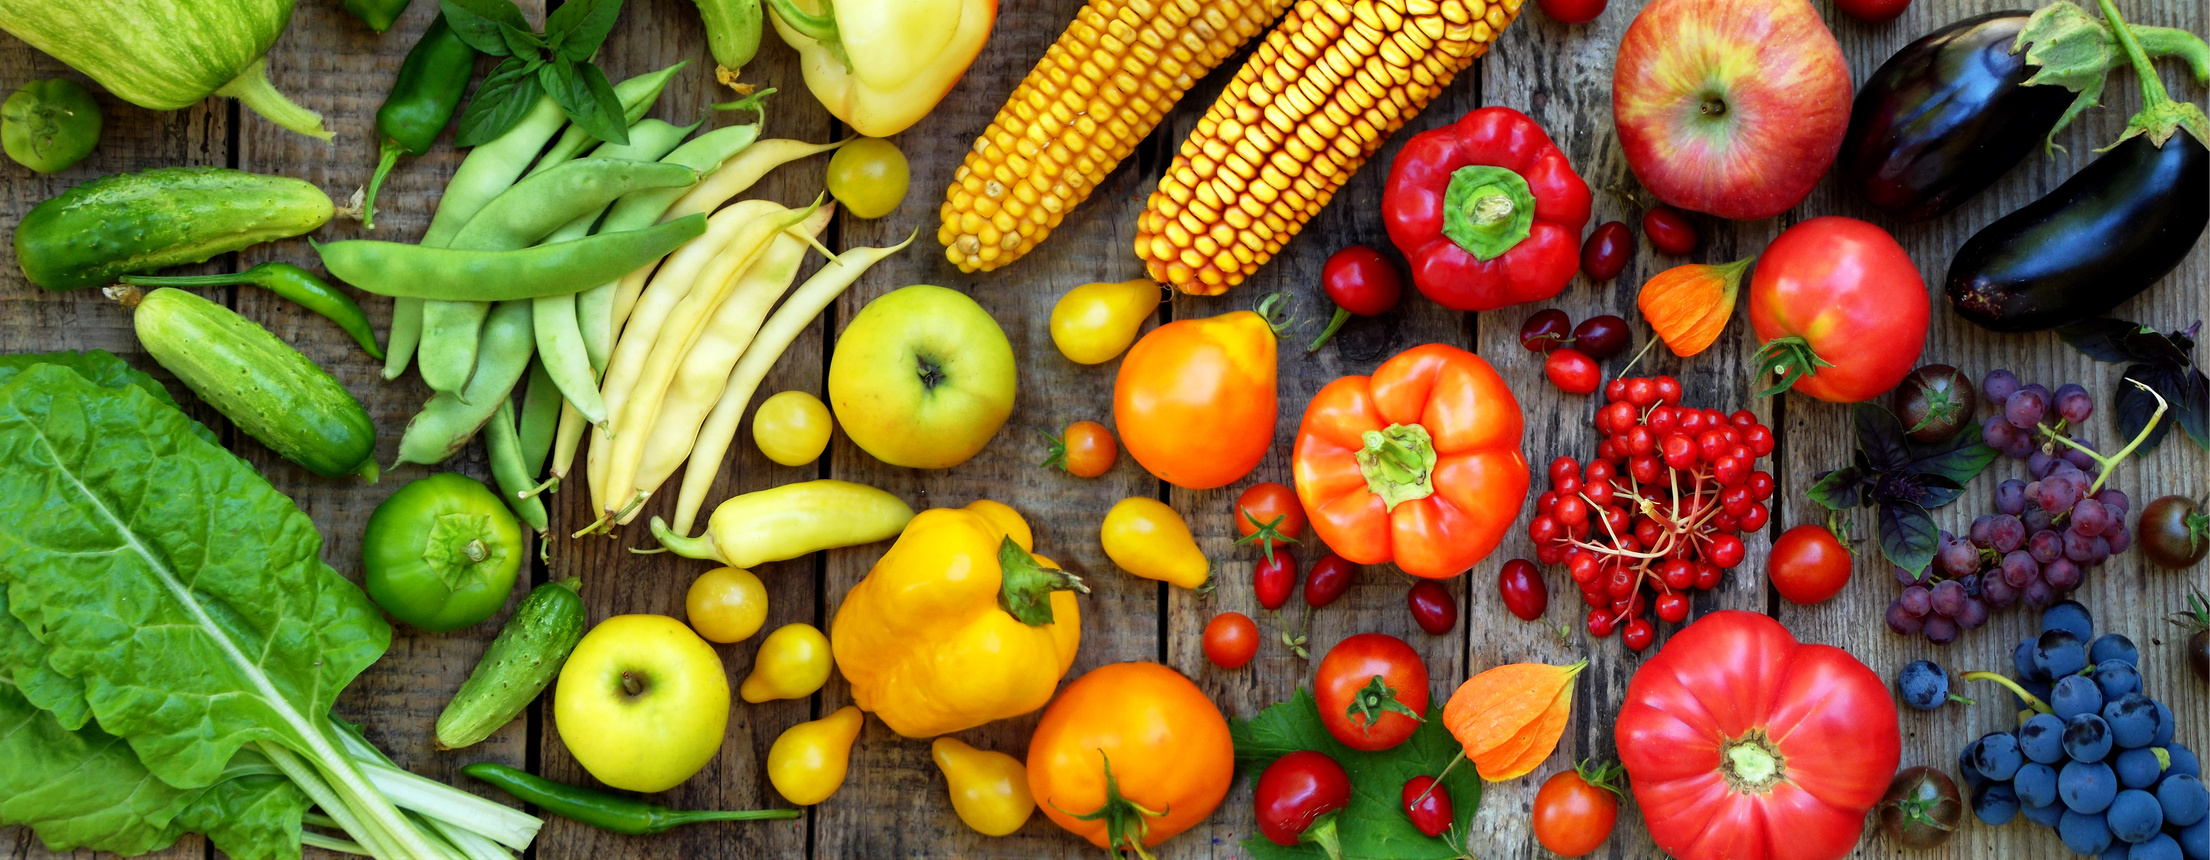 groente-en-fruit Deze groente en fruitsoorten bewaar je NIET in de koelkast 